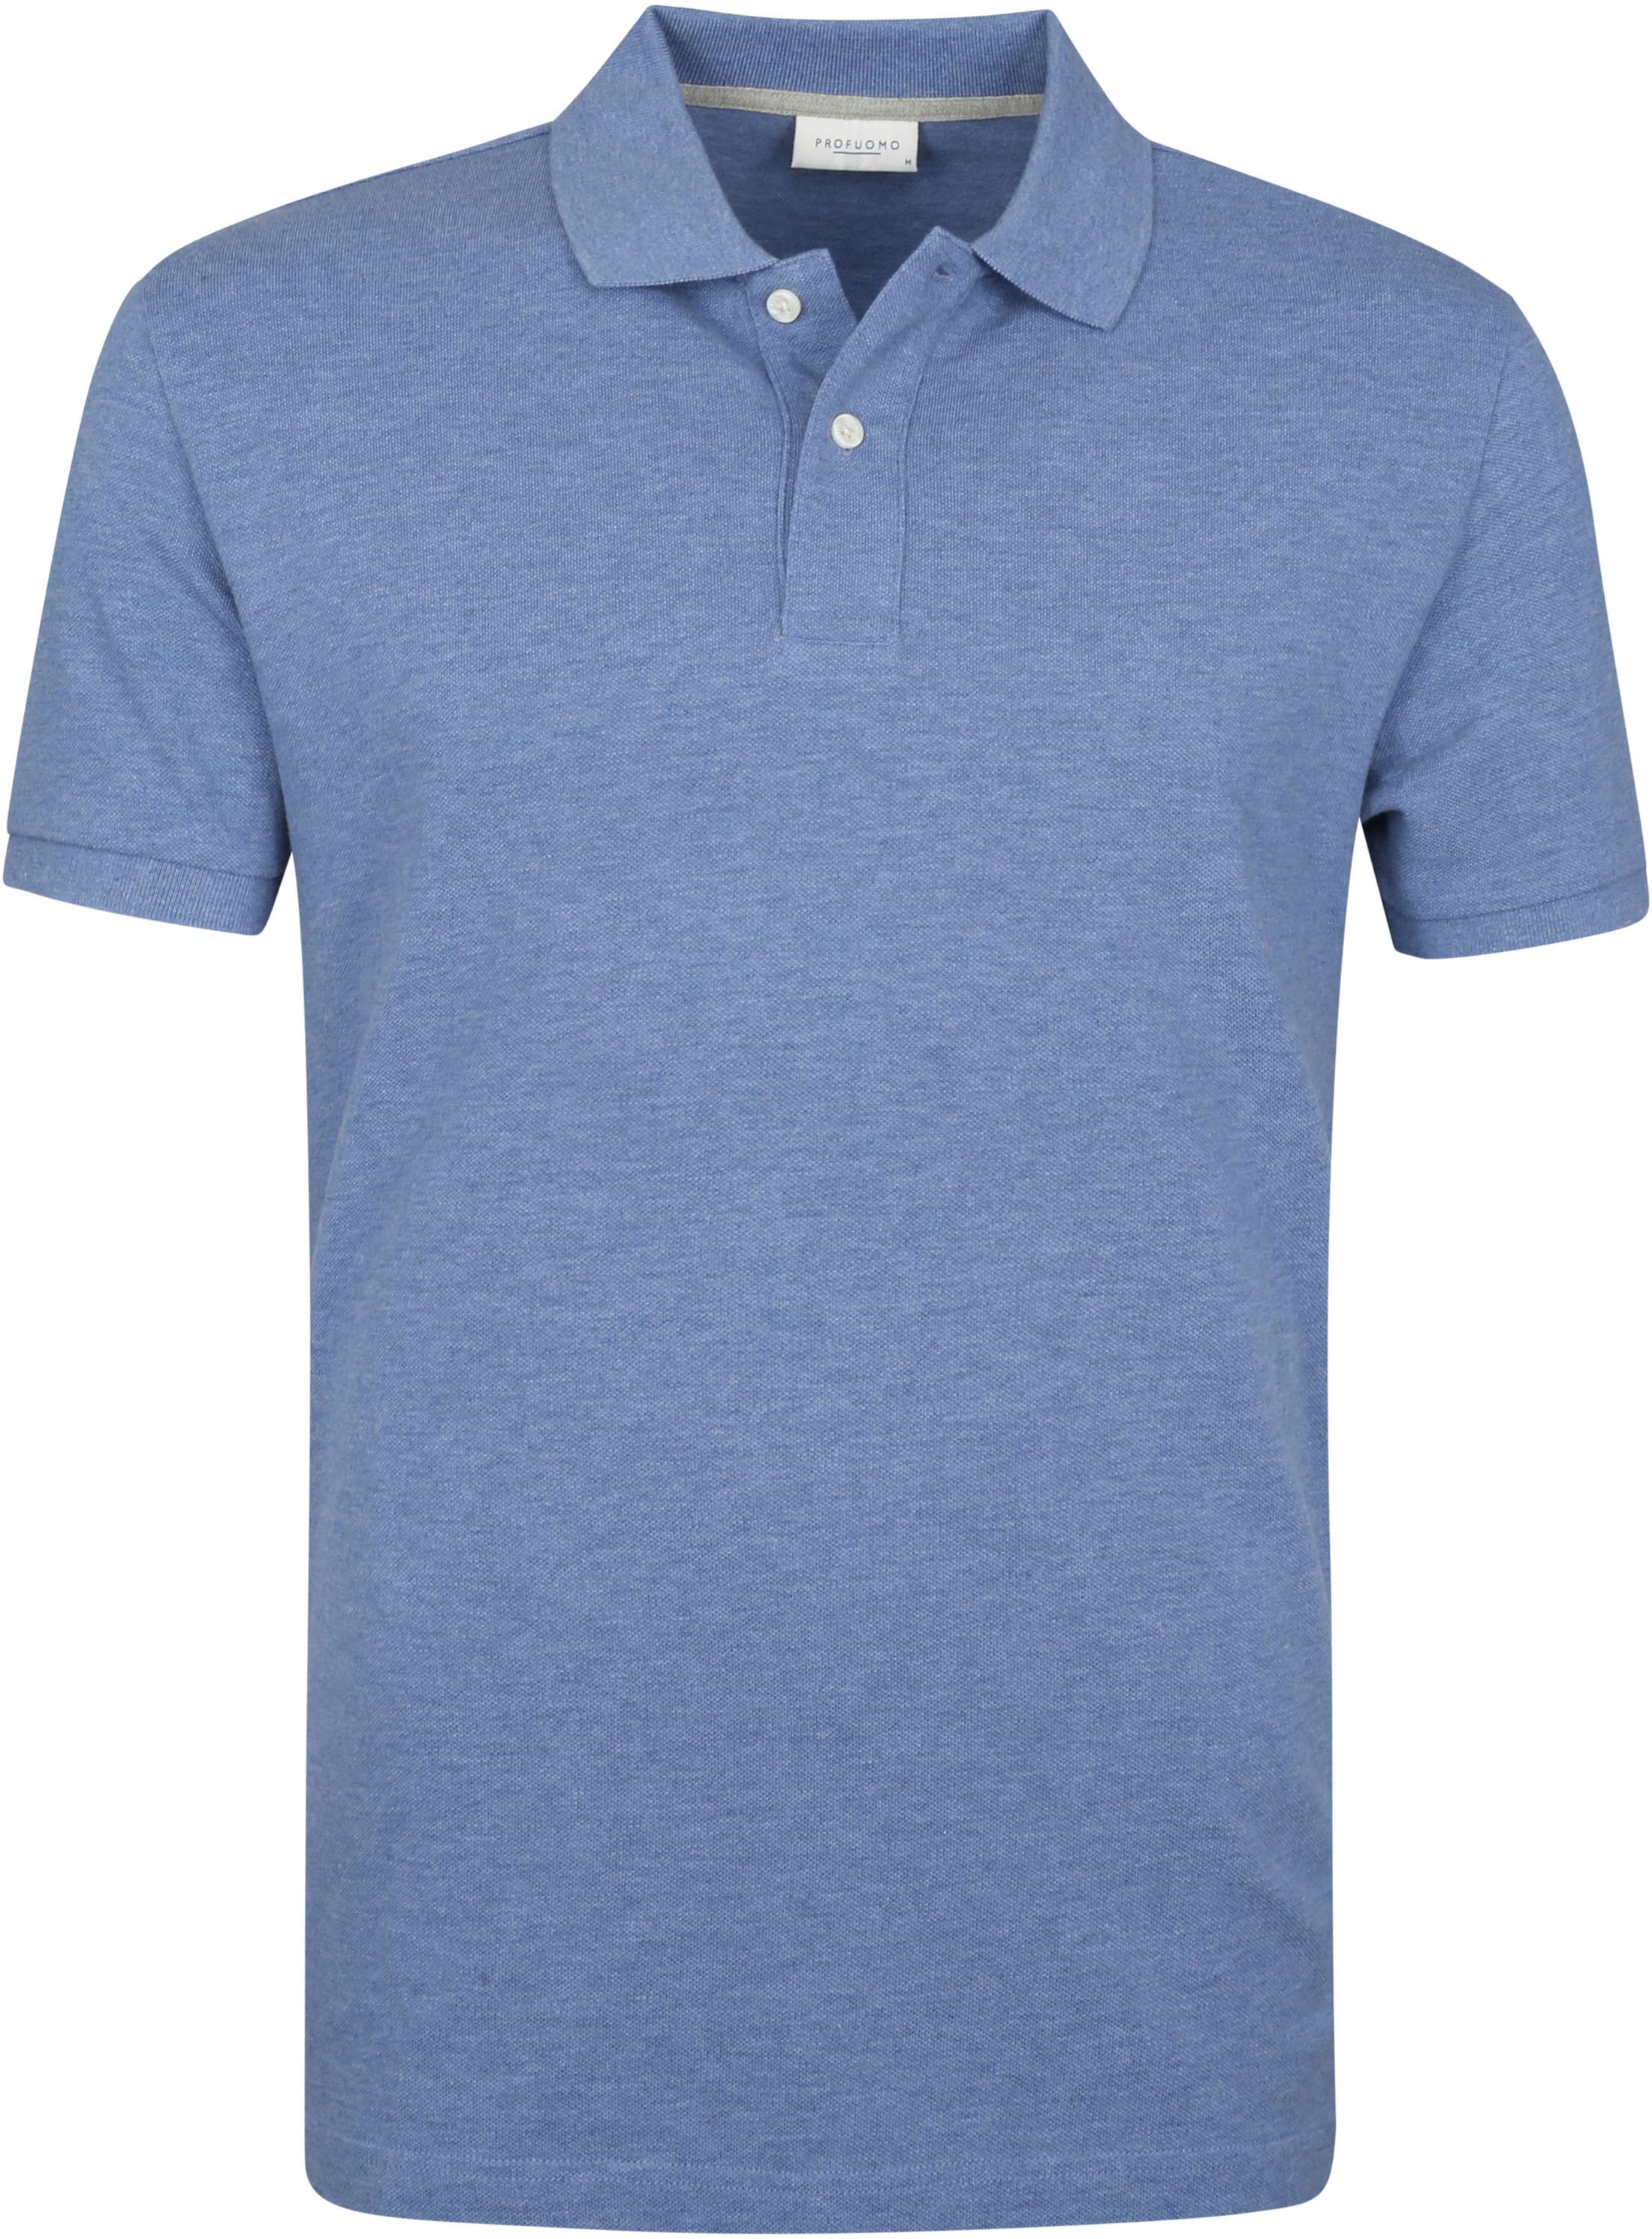 Profuomo Pique Polo Shirt Blue size L